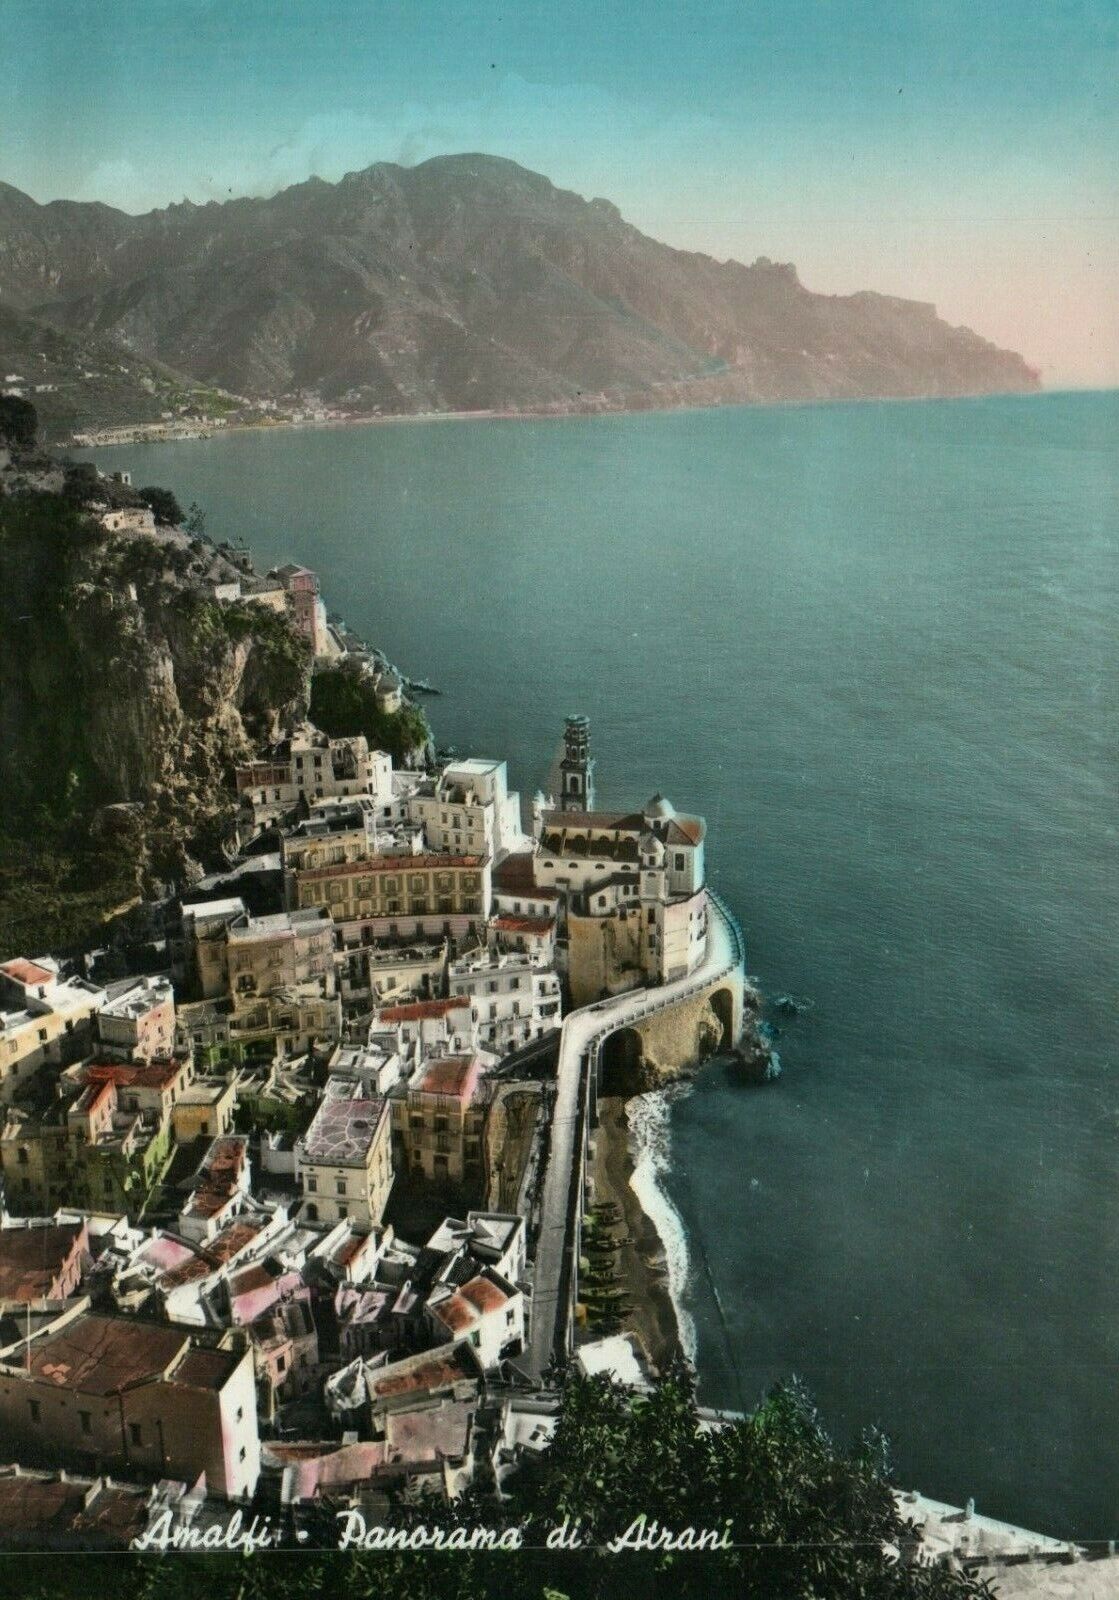 Amalfi Panorama of Atrani Italy Real Photo Poster painting RPPC Postcard 4 x 5.75